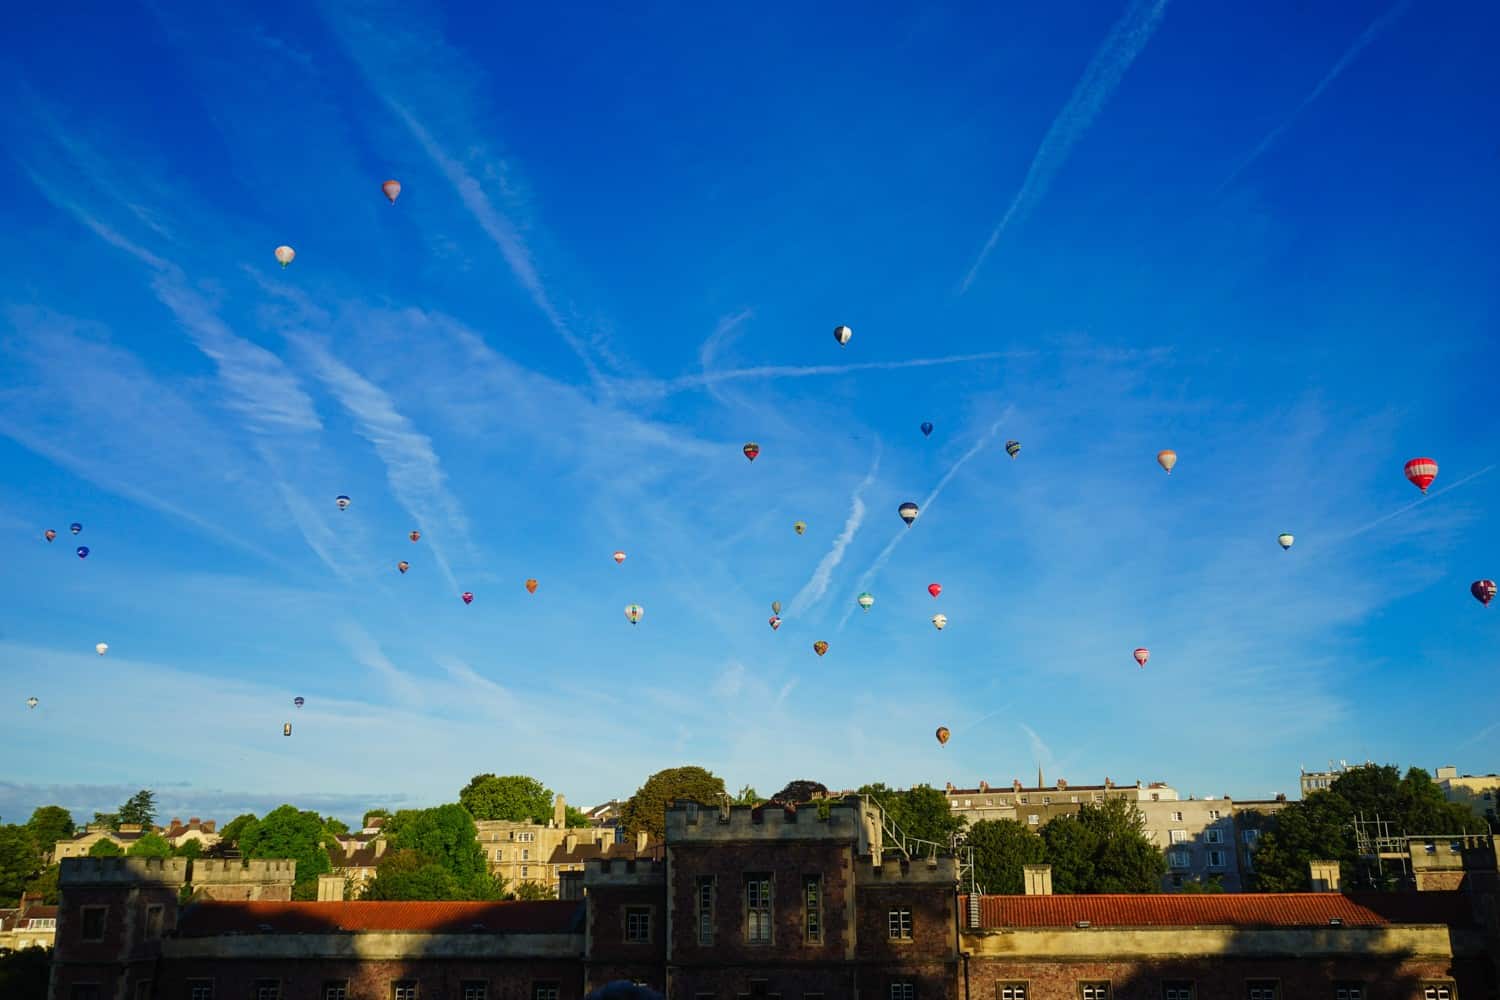 Bristol Balloon Fiesta over the city